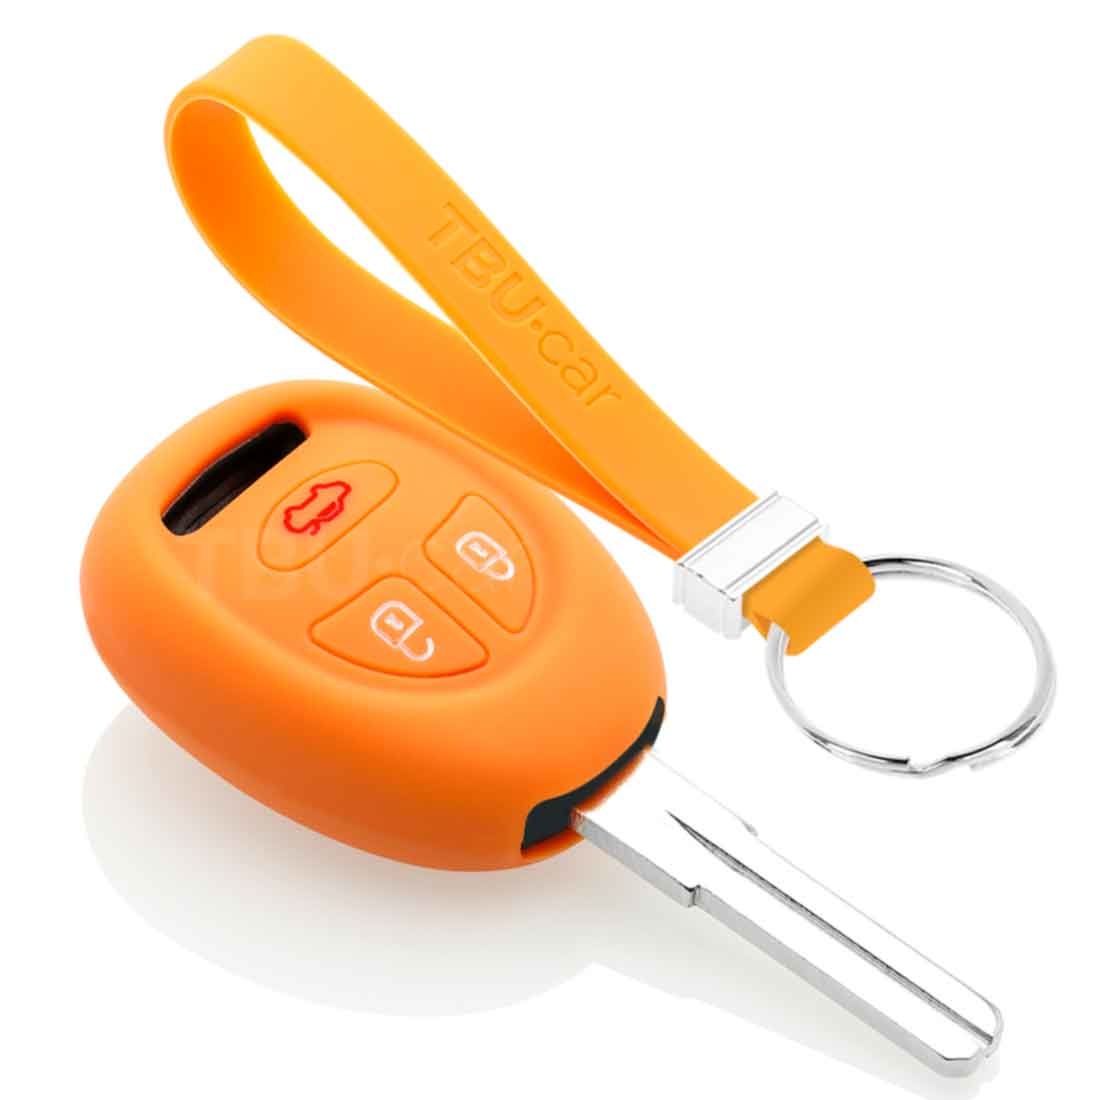 TBU car TBU car Housse de Protection clé compatible avec Saab - Coque Cover Housse étui en Silicone - Orange